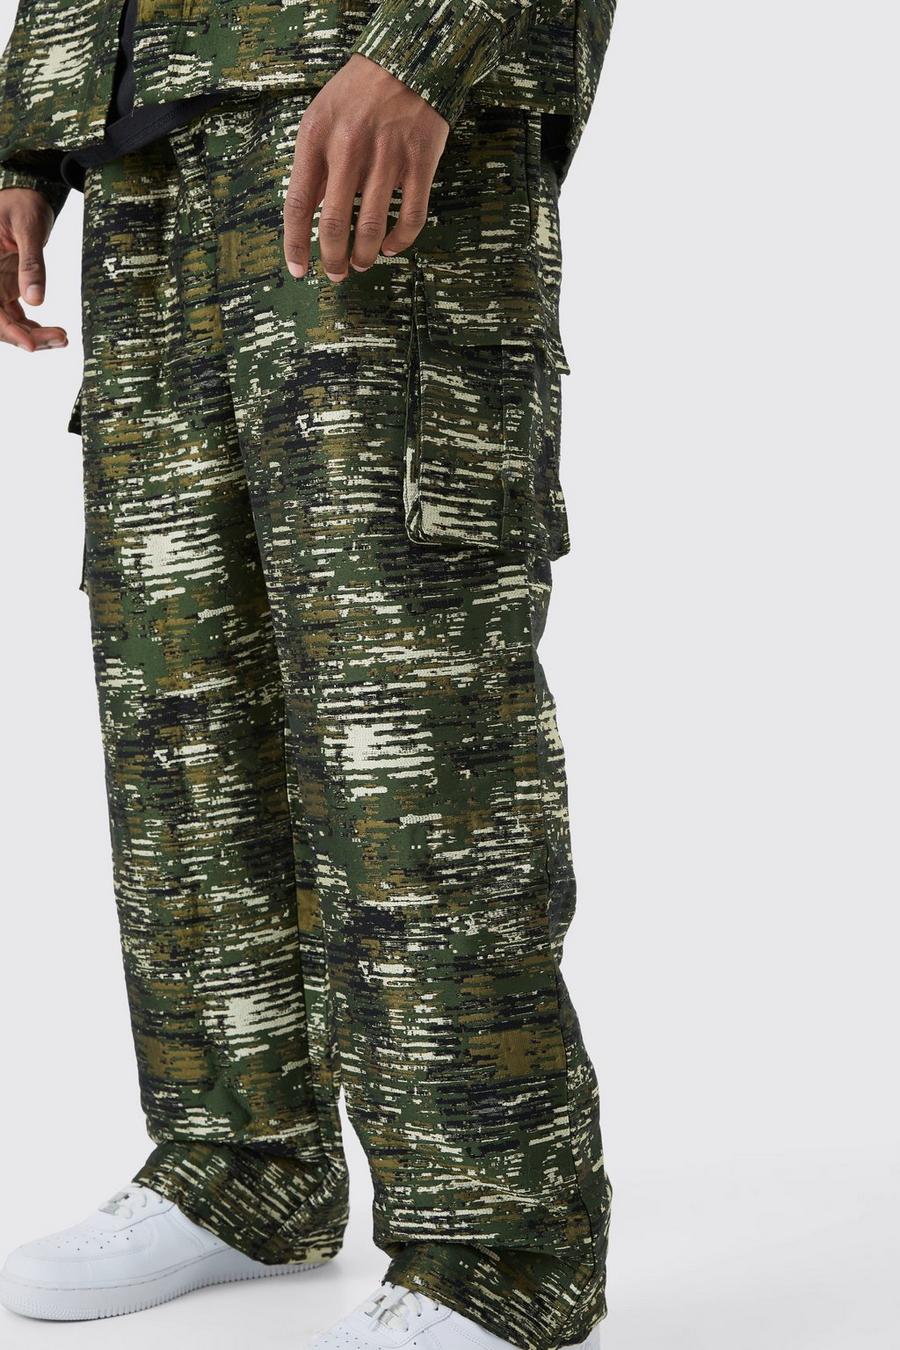 Pantalón Tall cargo holgado texturizado de camuflaje, Camo